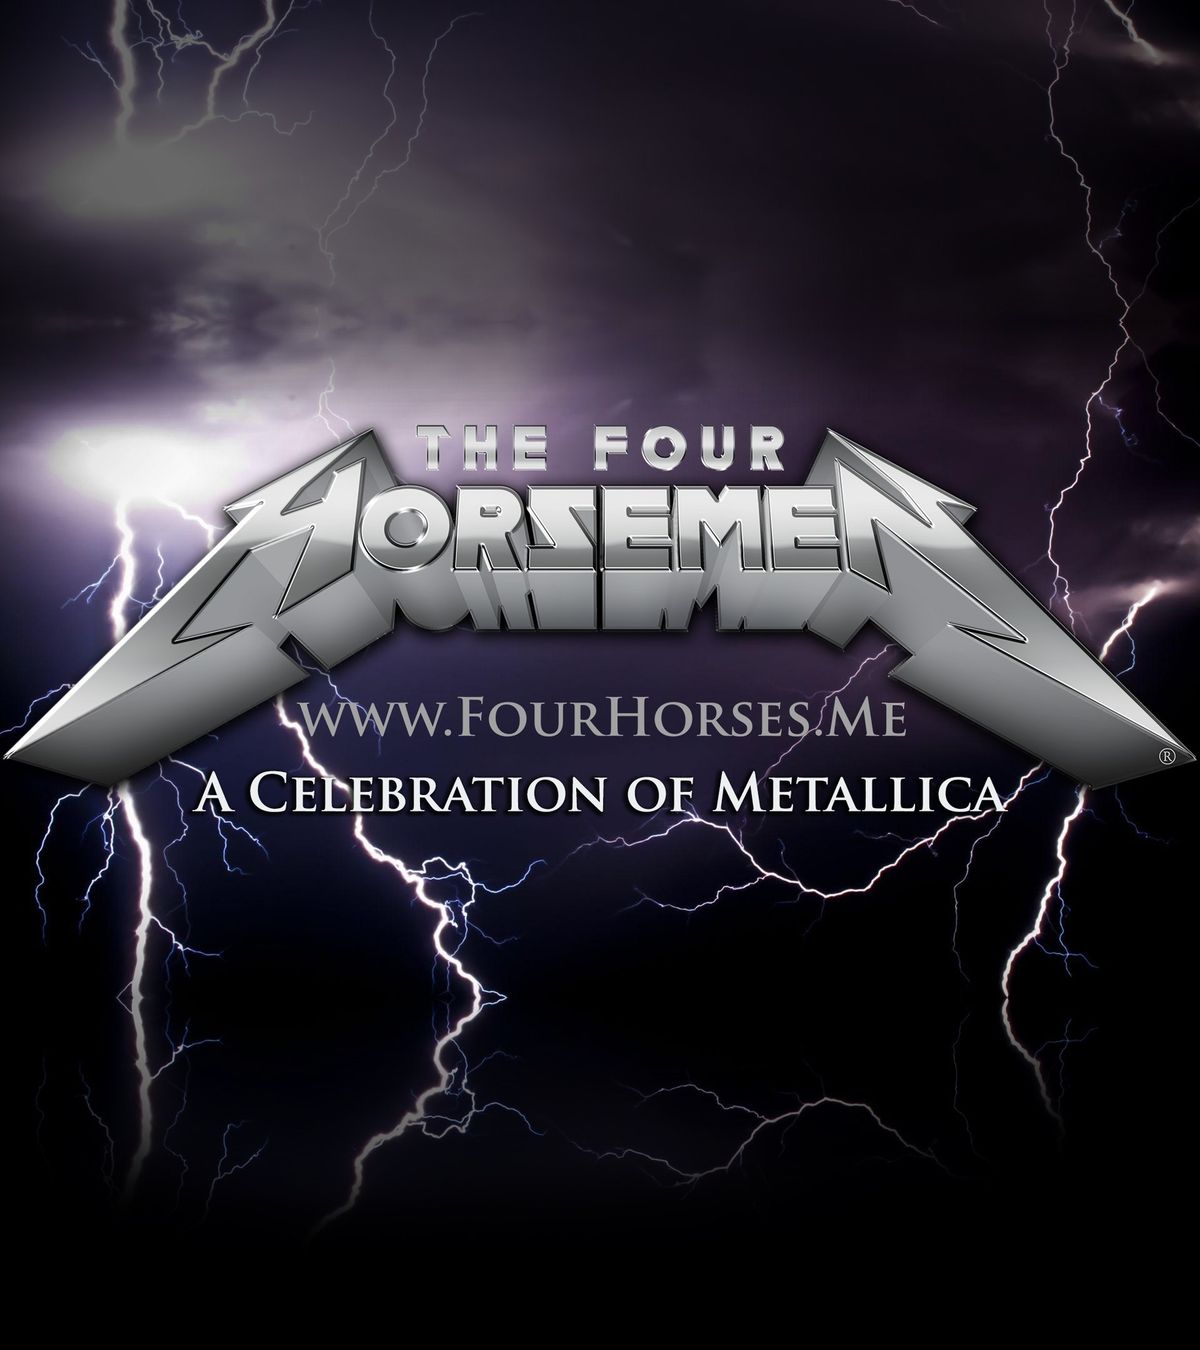 The Four Horsemen (Metallica Tribute show)